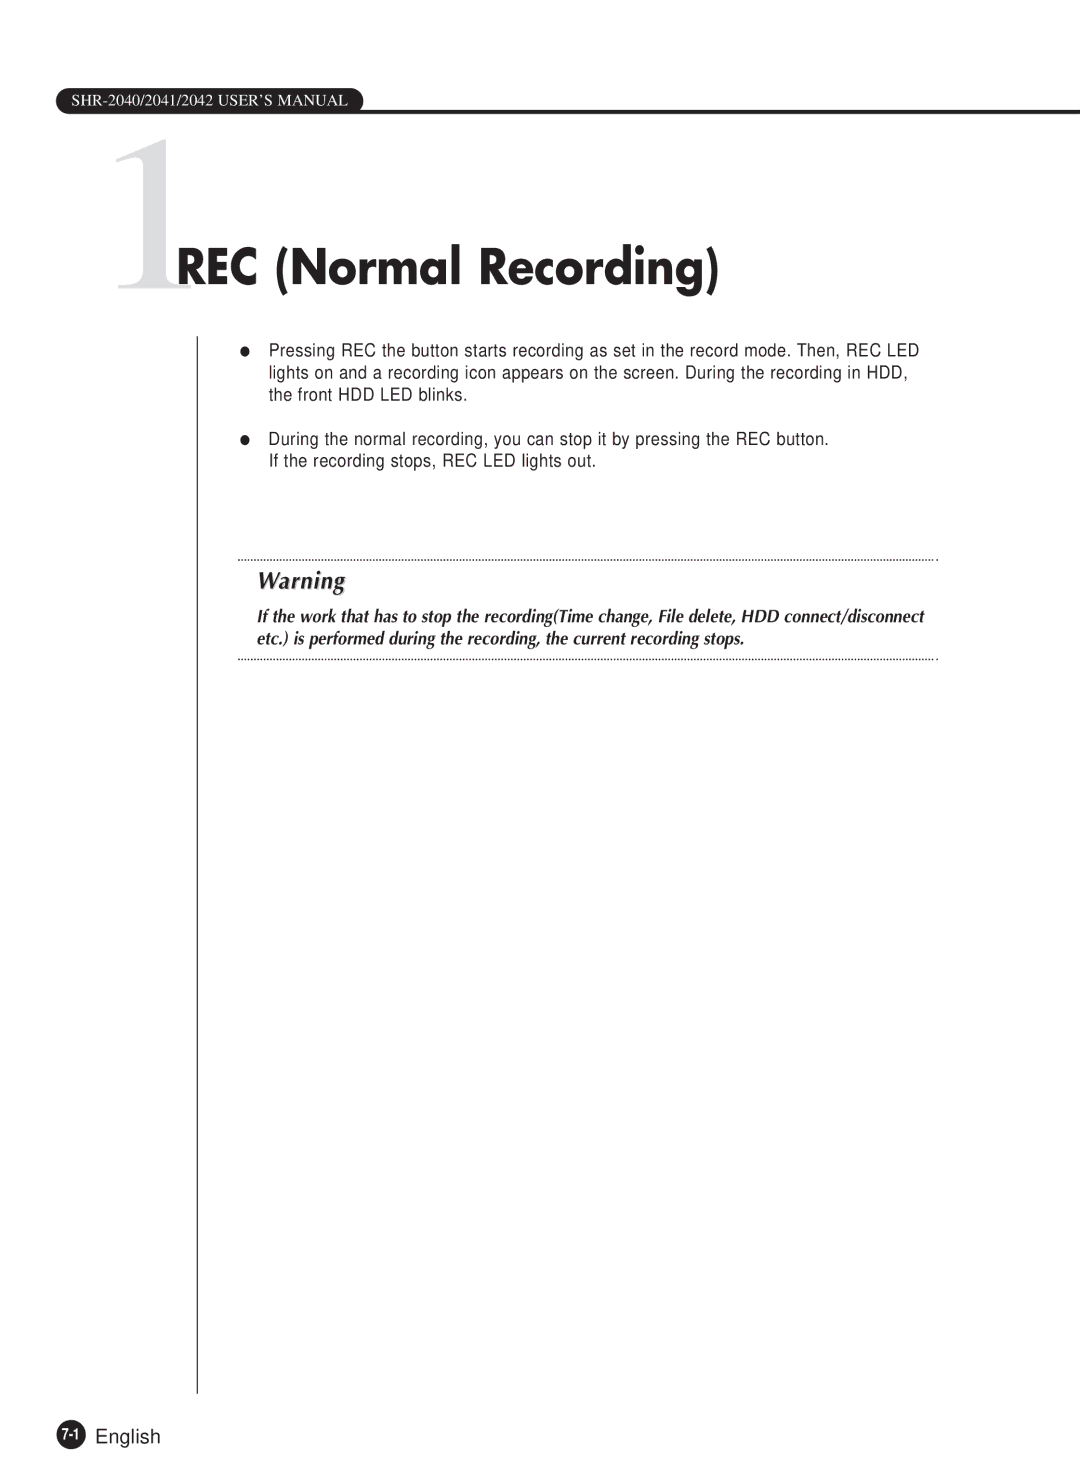 Samsung SHR-2040P, SHR-2040N manual 1REC Normal Recording, 1English 